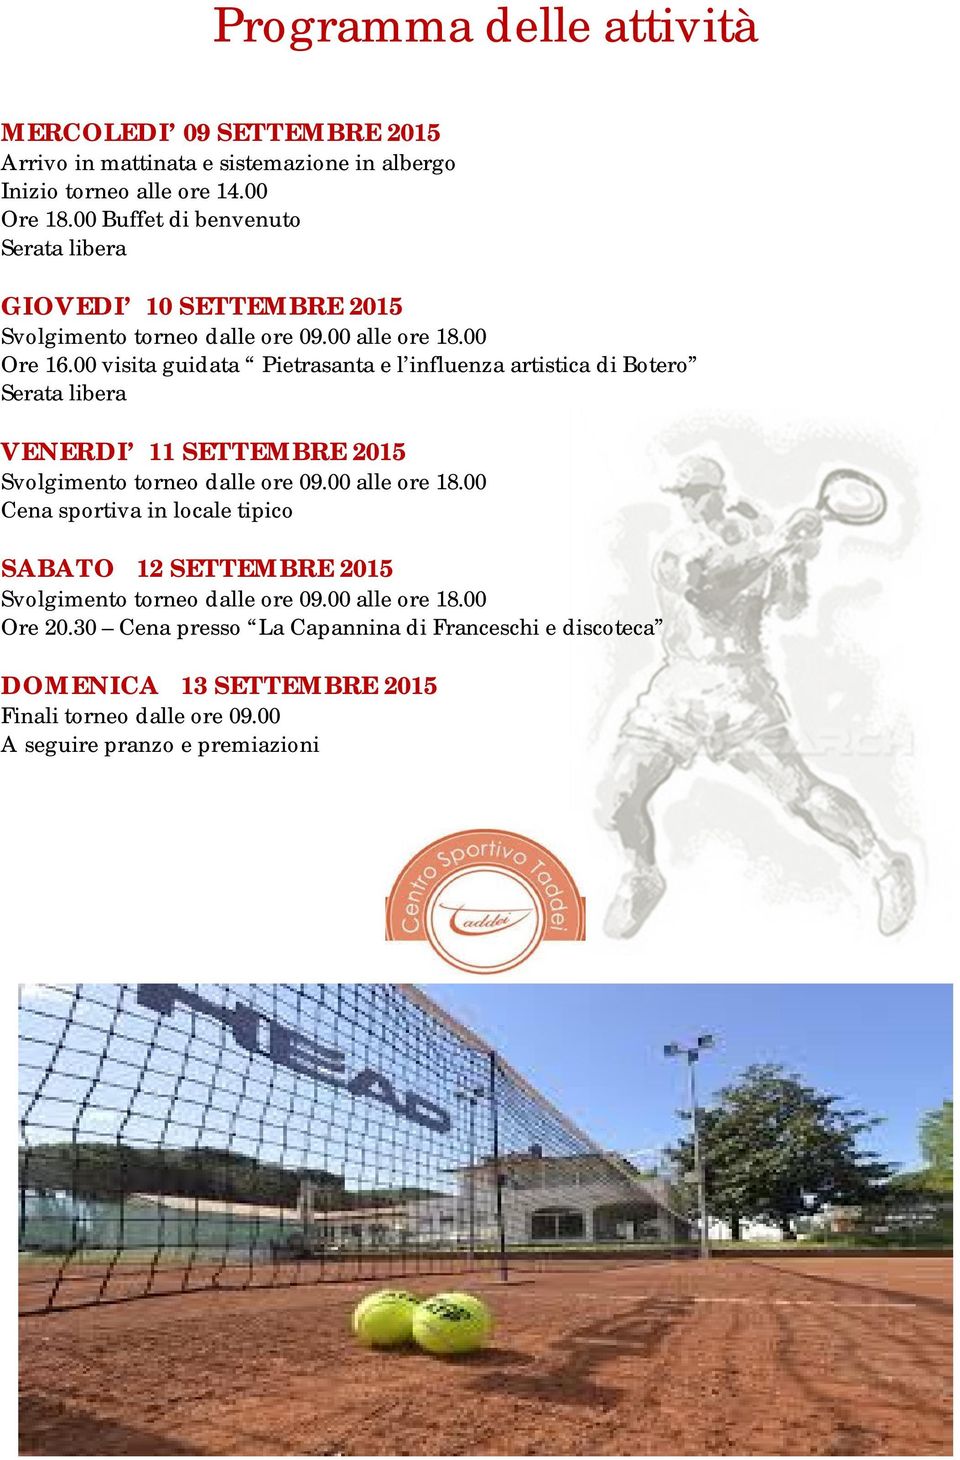 00 visita guidata Pietrasanta e l influenza artistica di Botero Serata libera VENERDI 11 SETTEMBRE 2015 Svolgimento torneo dalle ore 09.00 alle ore 18.